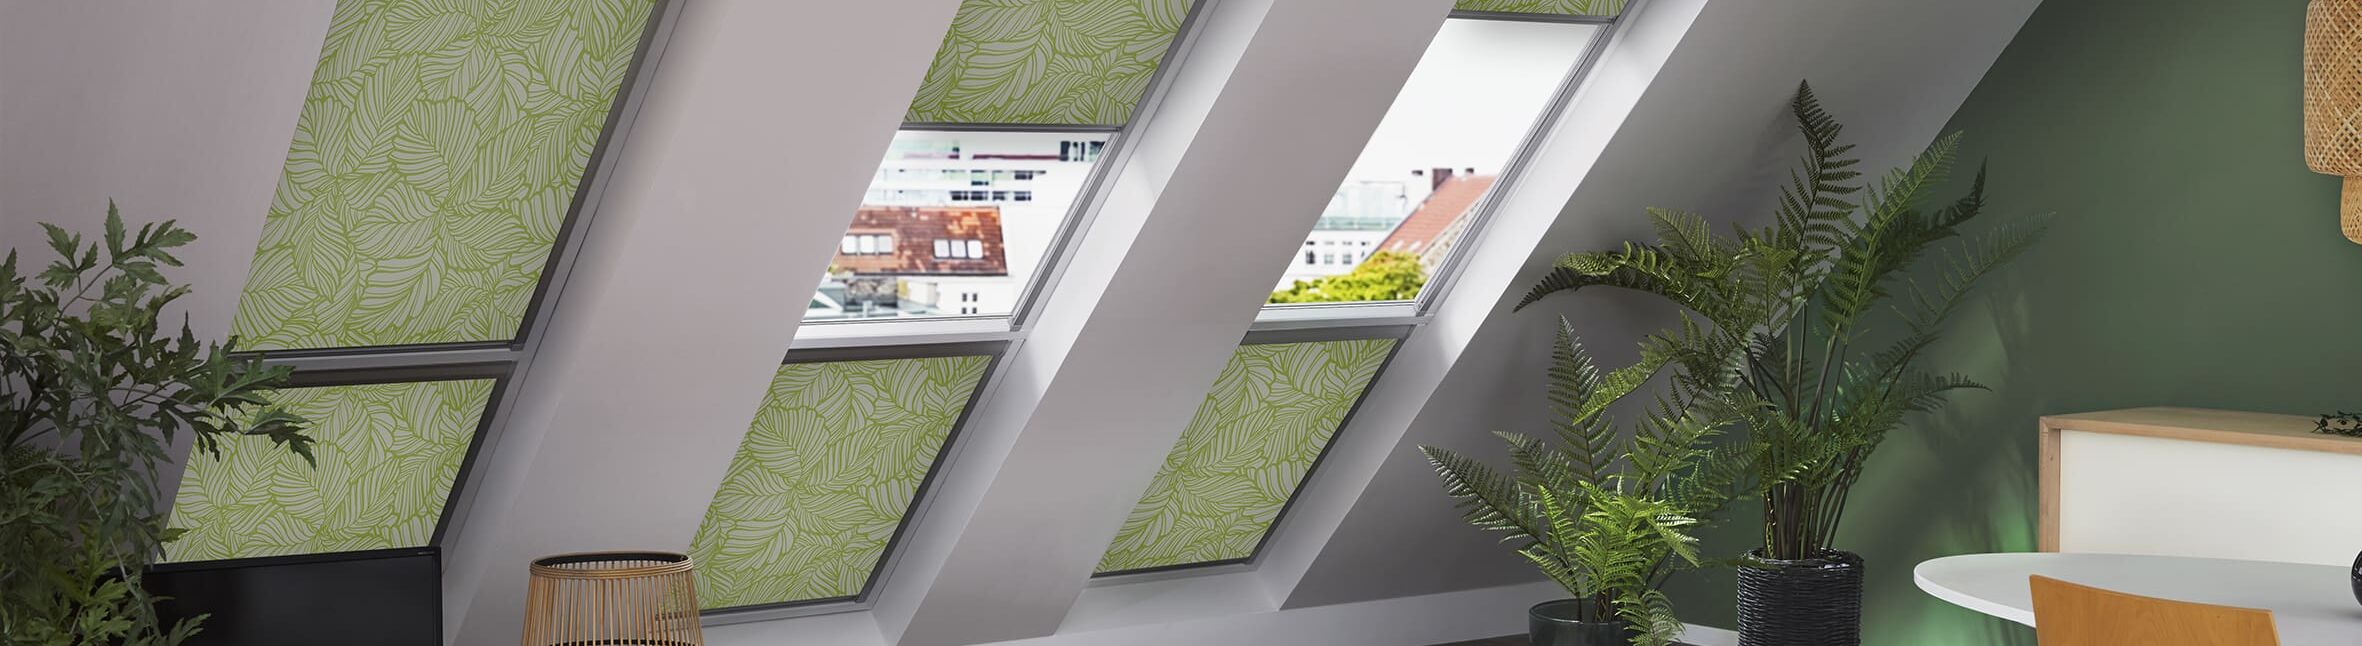 Dachfensterlösungen in Wiesbaden